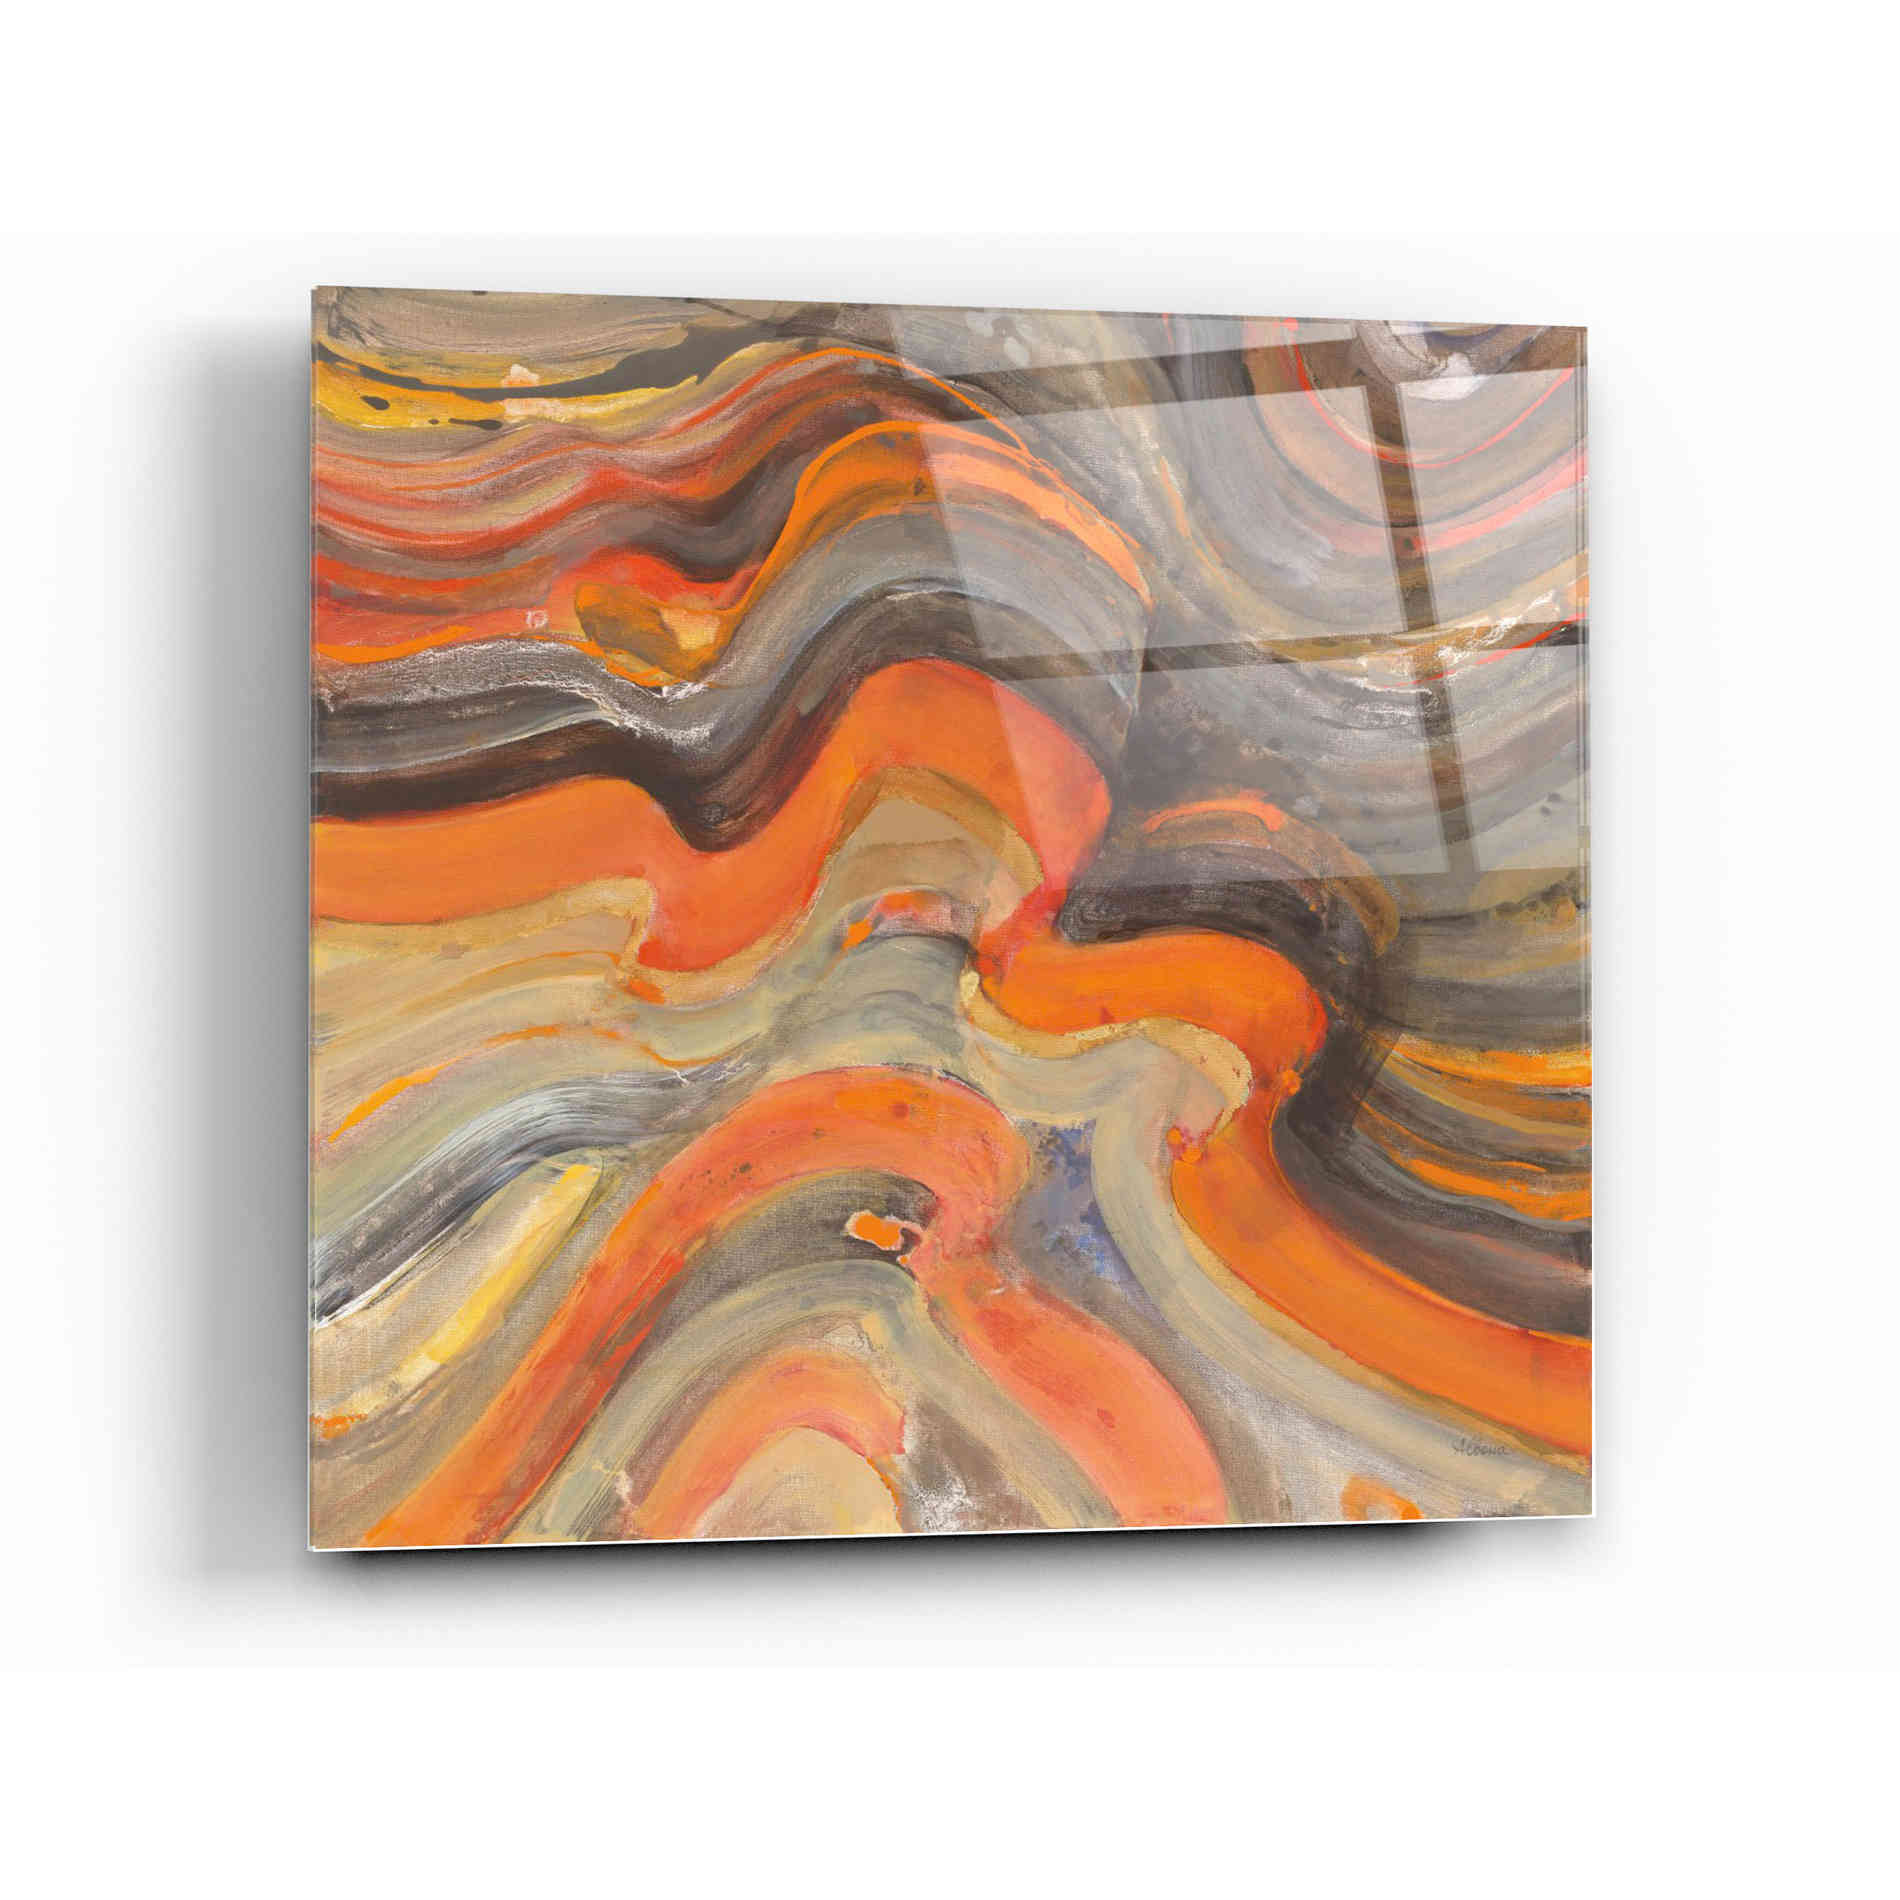 Epic Art 'Floating Lava' by Albena Hristova, Acrylic Glass Wall Art,12x12